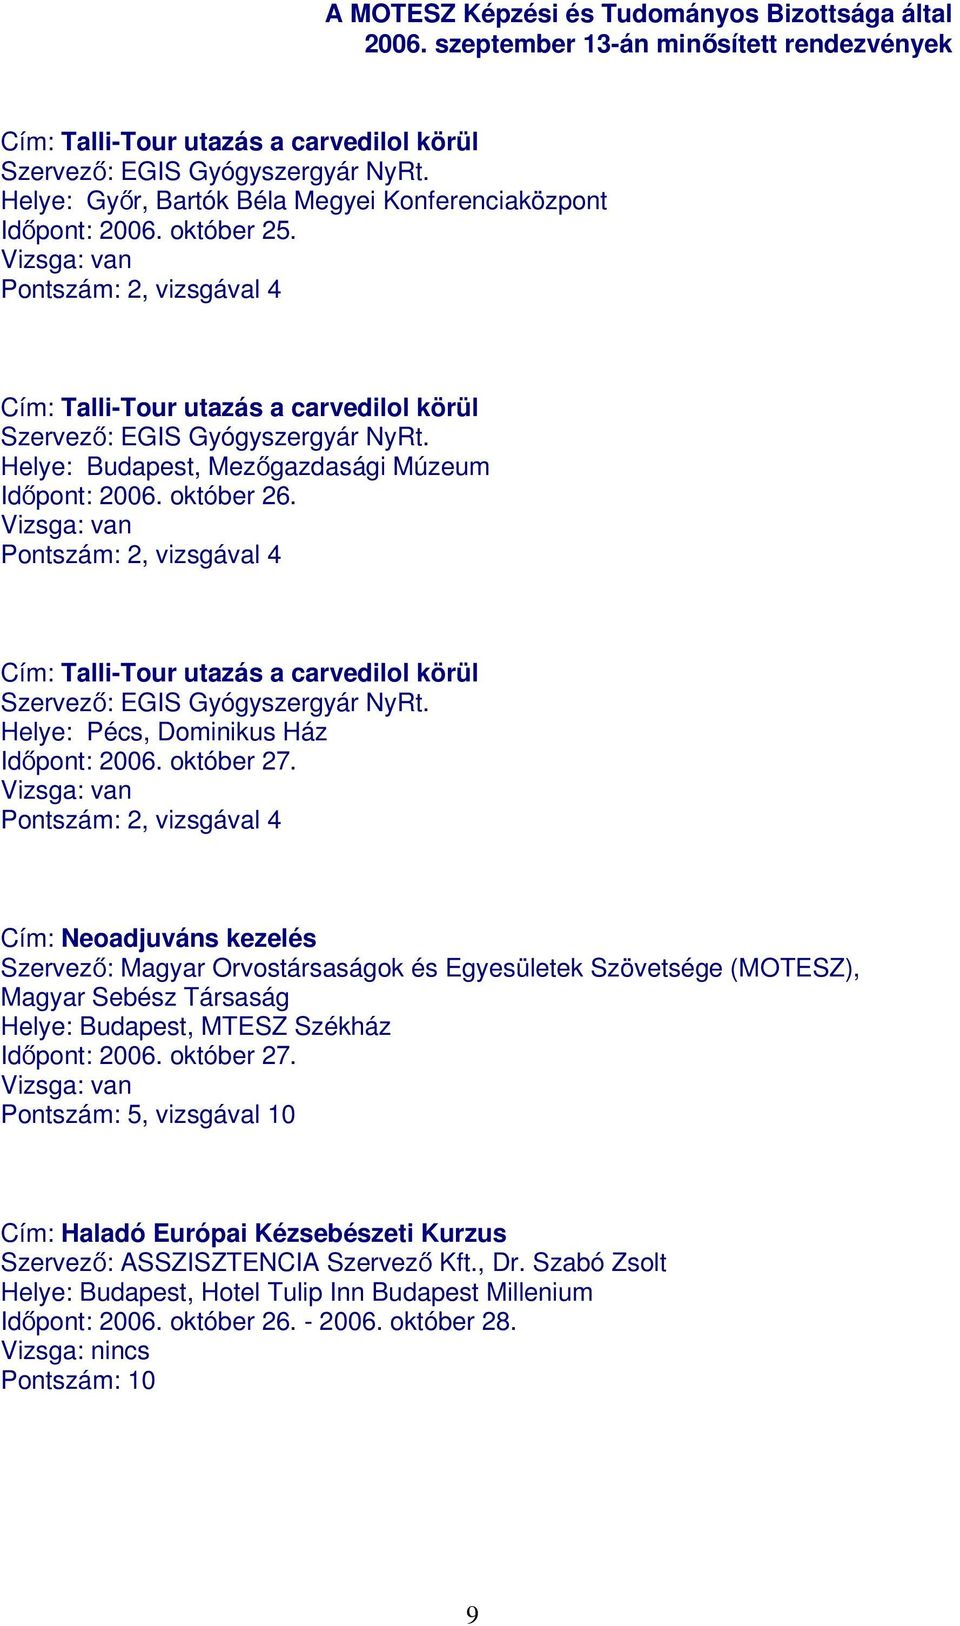 Pontszám: 2, vizsgával 4 Cím: Talli-Tour utazás a carvedilol körül Szervező: EGIS Gyógyszergyár NyRt. Helye: Pécs, Dominikus Ház Időpont: 2006. október 27.